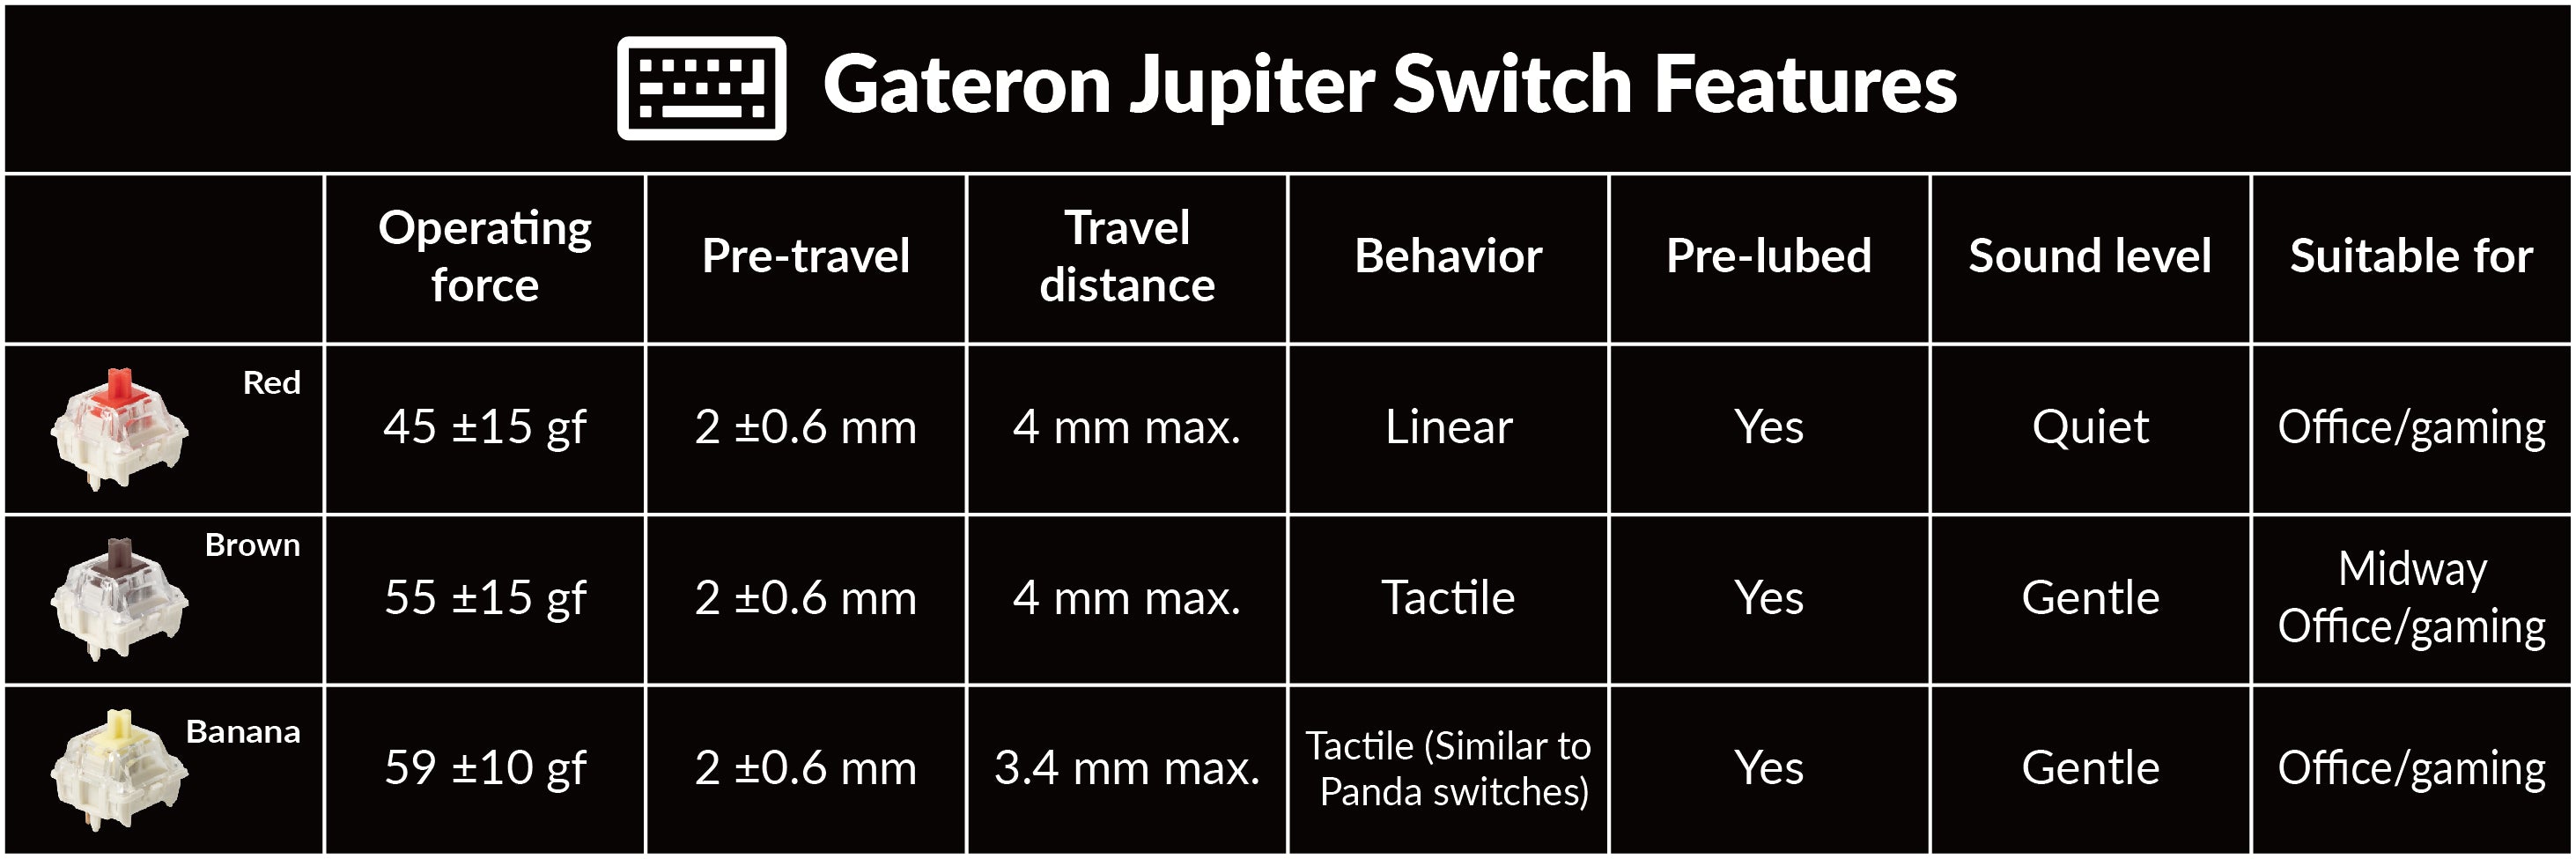 Gateron Jupiter Switch Features